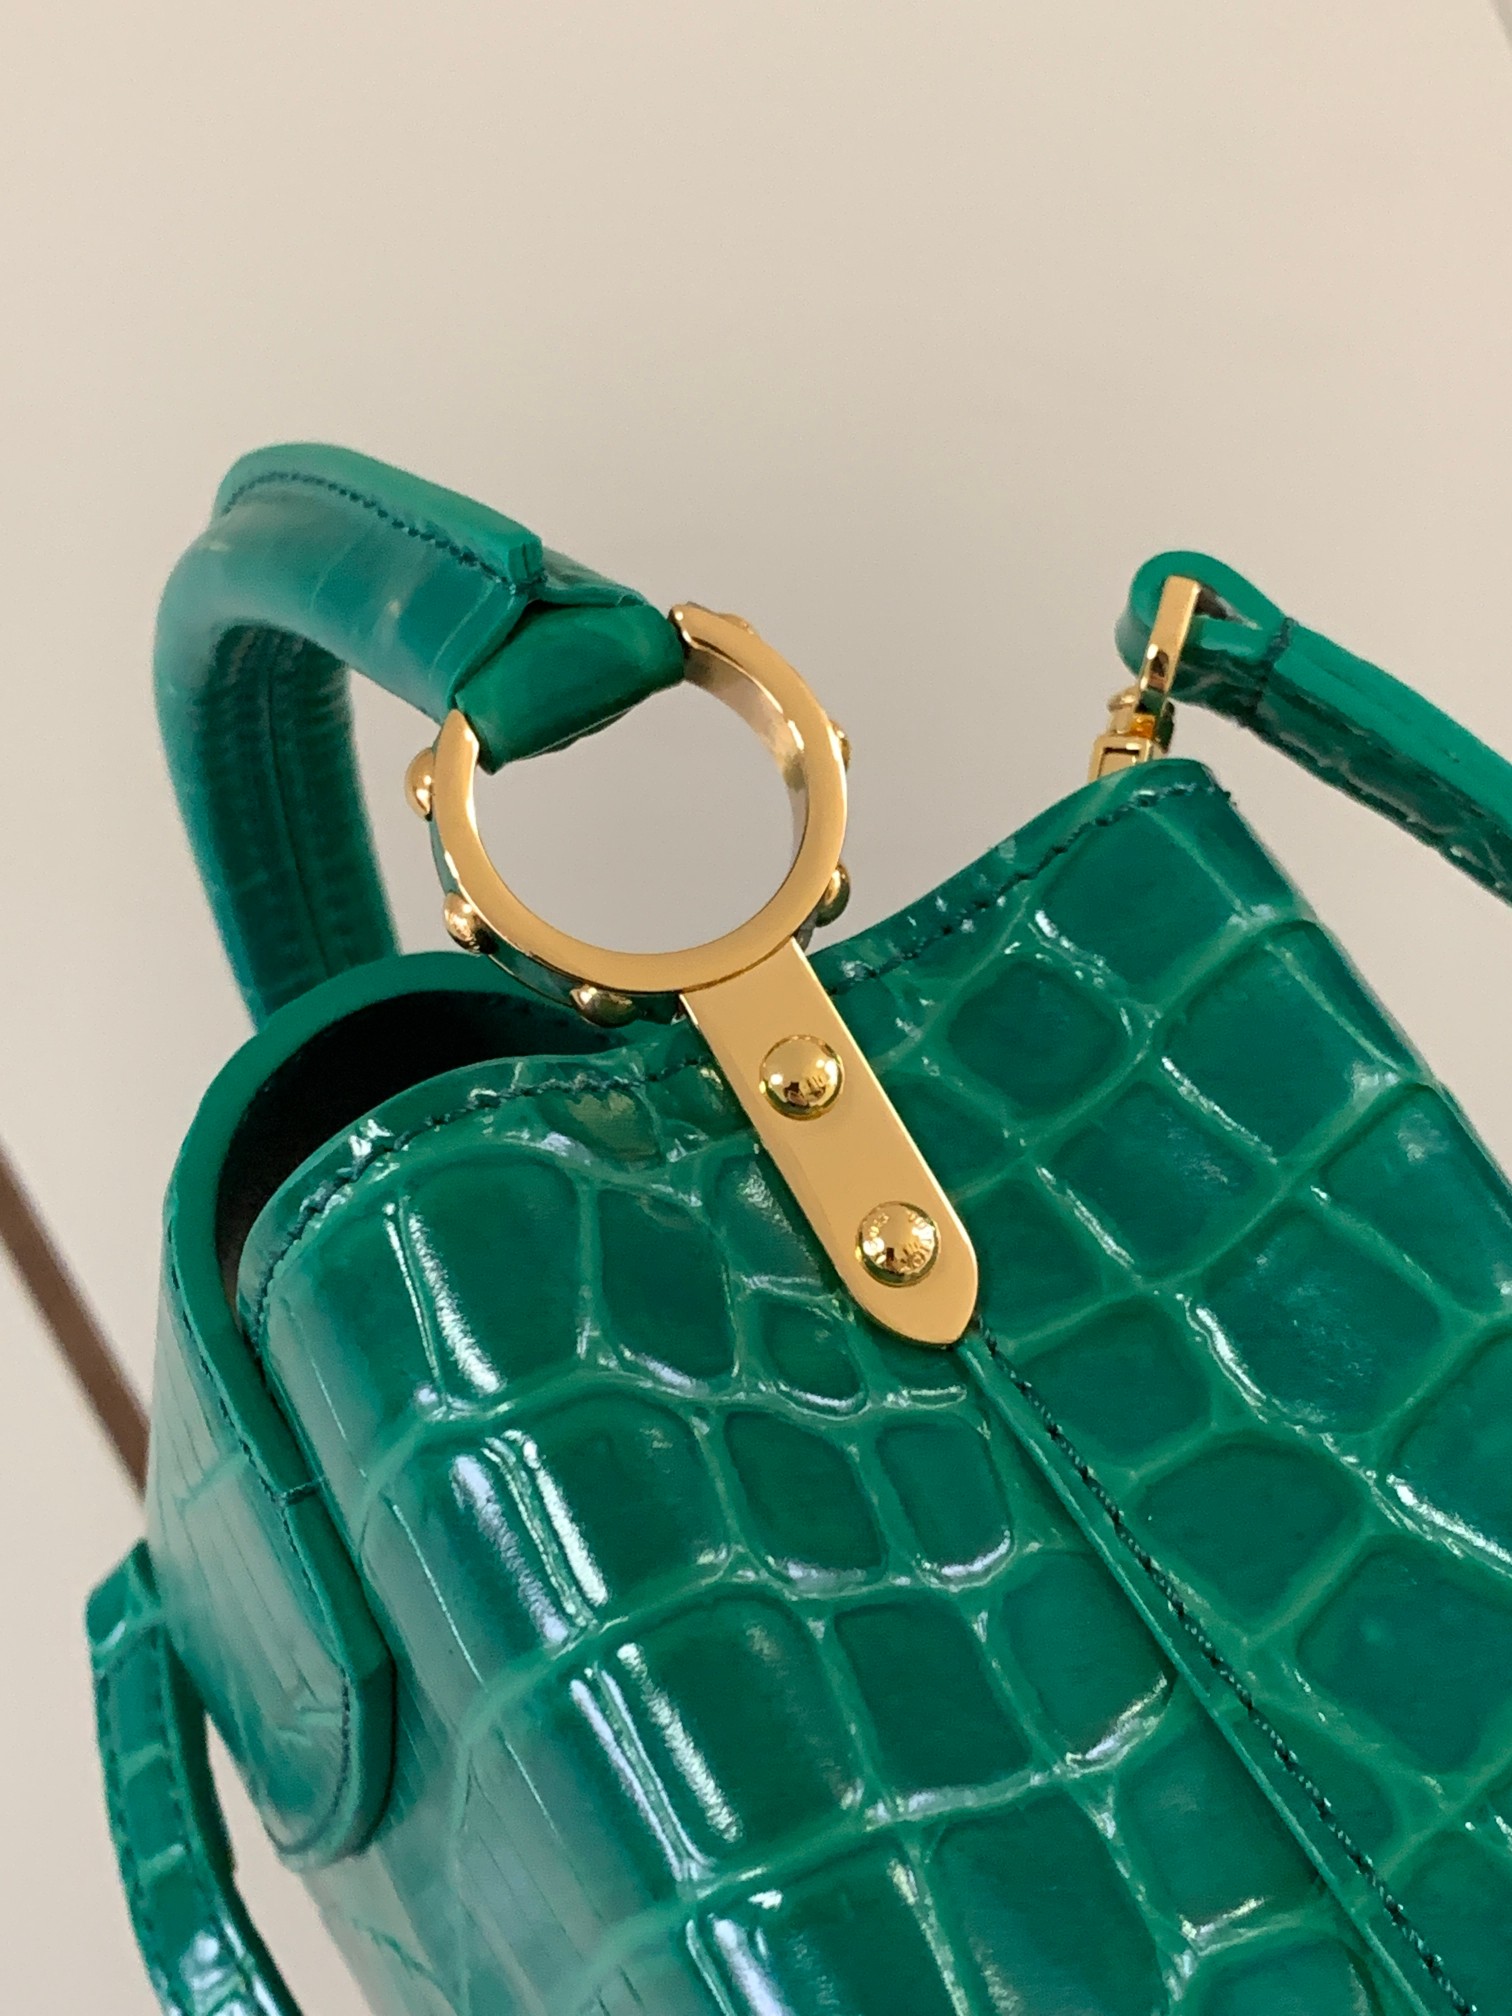 特级原厂皮N93429祖母绿亮面鳄鱼纹金扣本款Capucines迷你手袋由鳄鱼纹皮革打造而成质感华贵以优